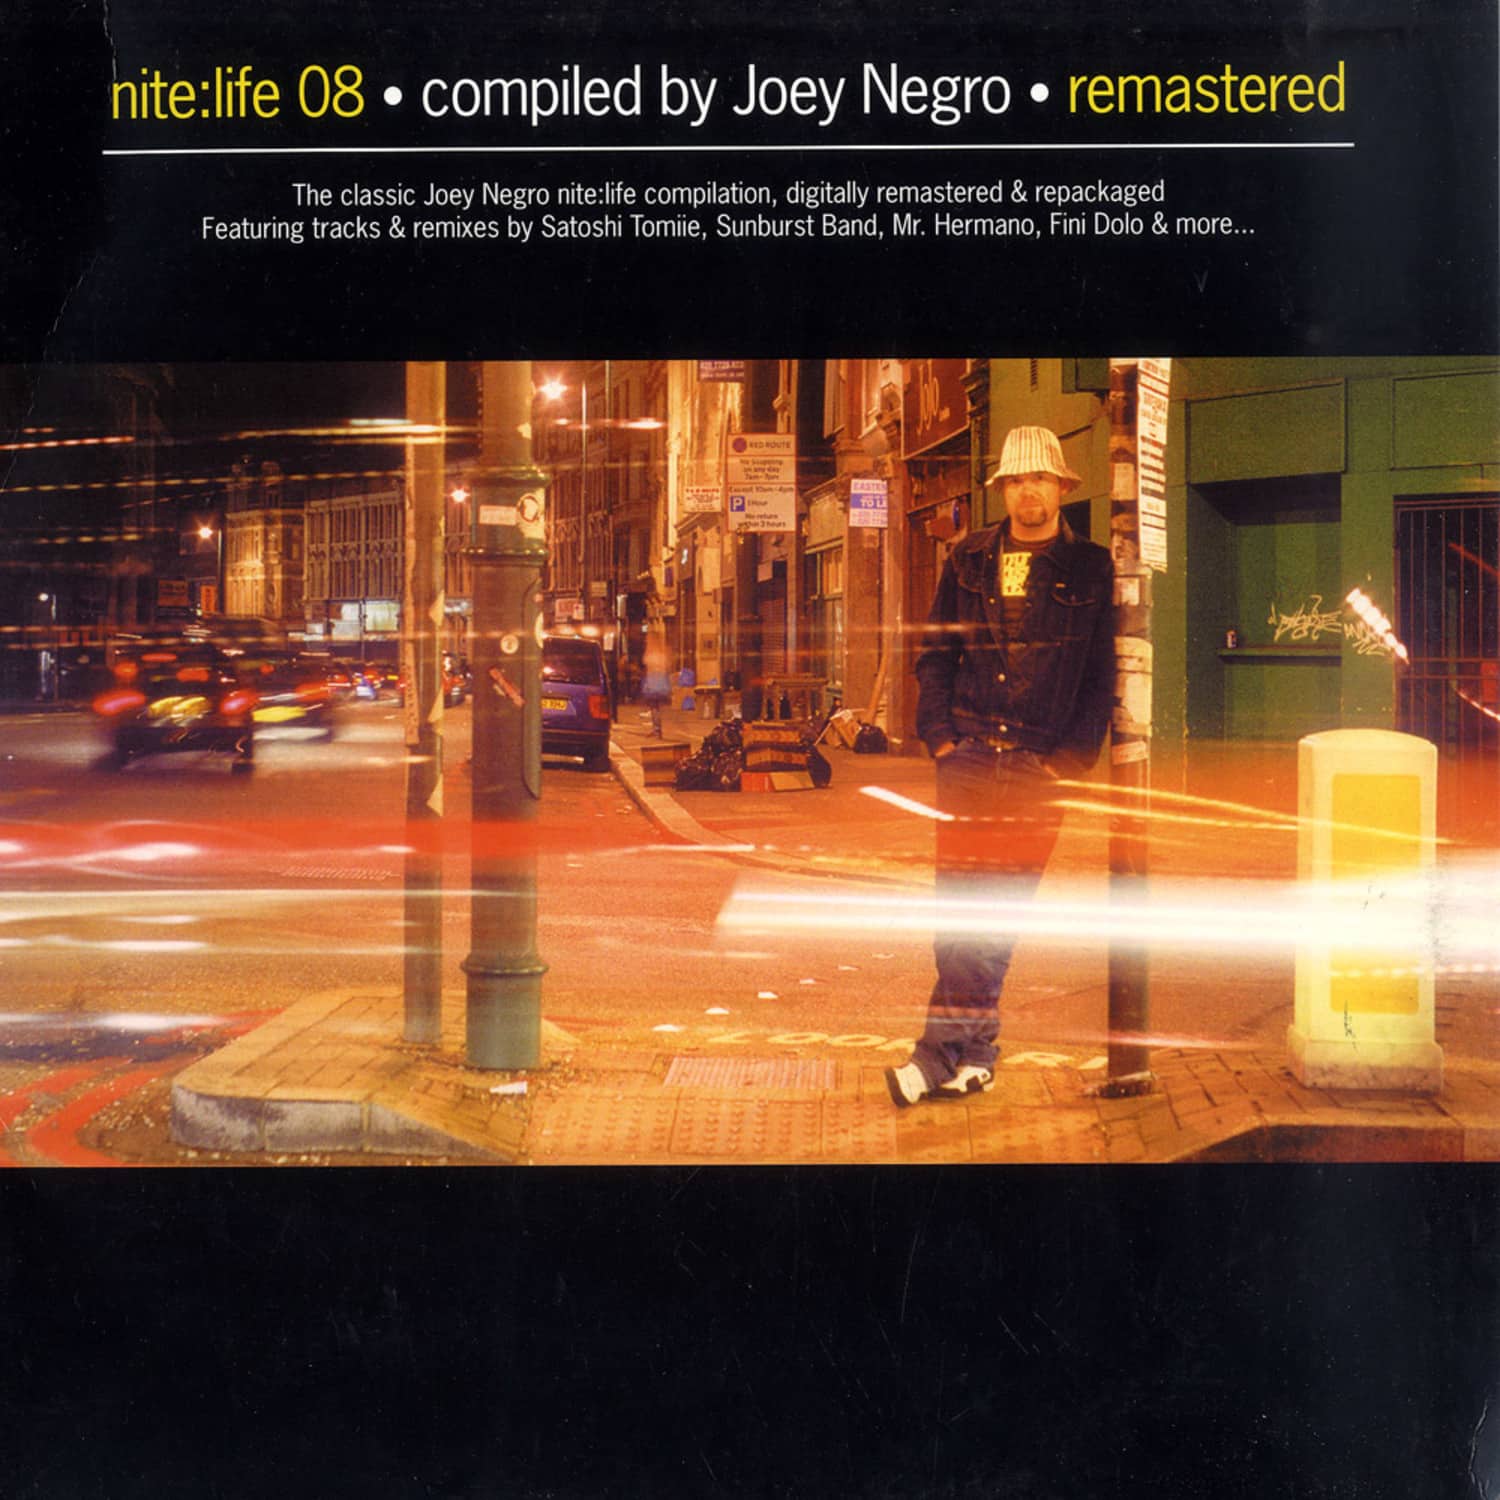 Joey Negro - Nite:life 08 